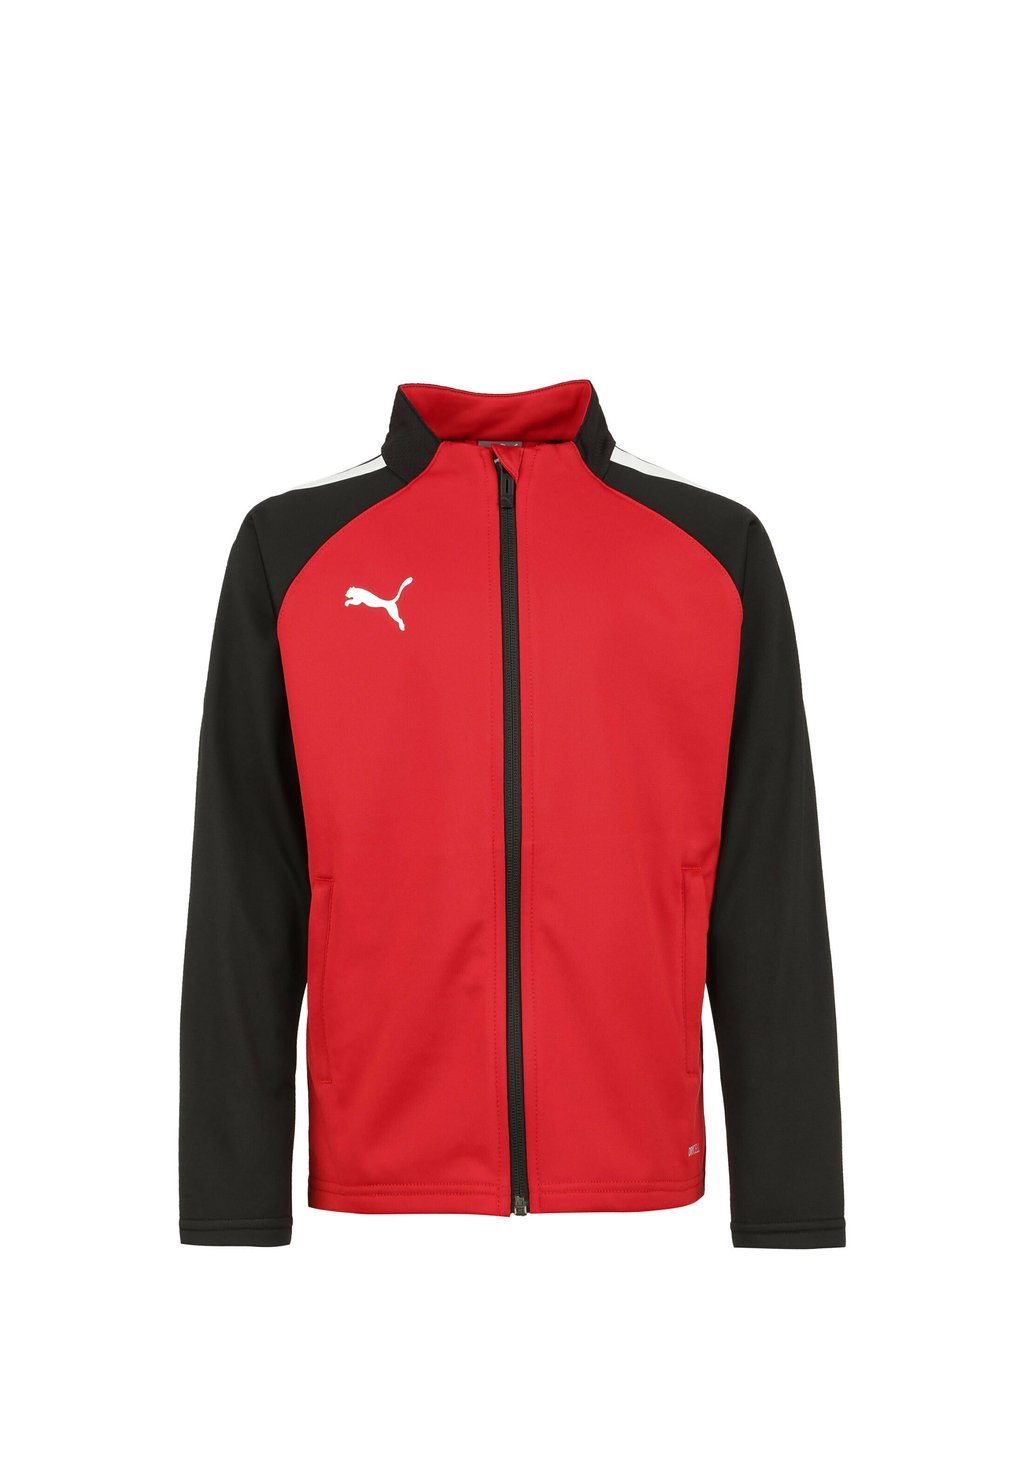 Спортивная куртка Teamliga Puma, цвет puma red / puma black кроссовки puma zapatillas black grey red